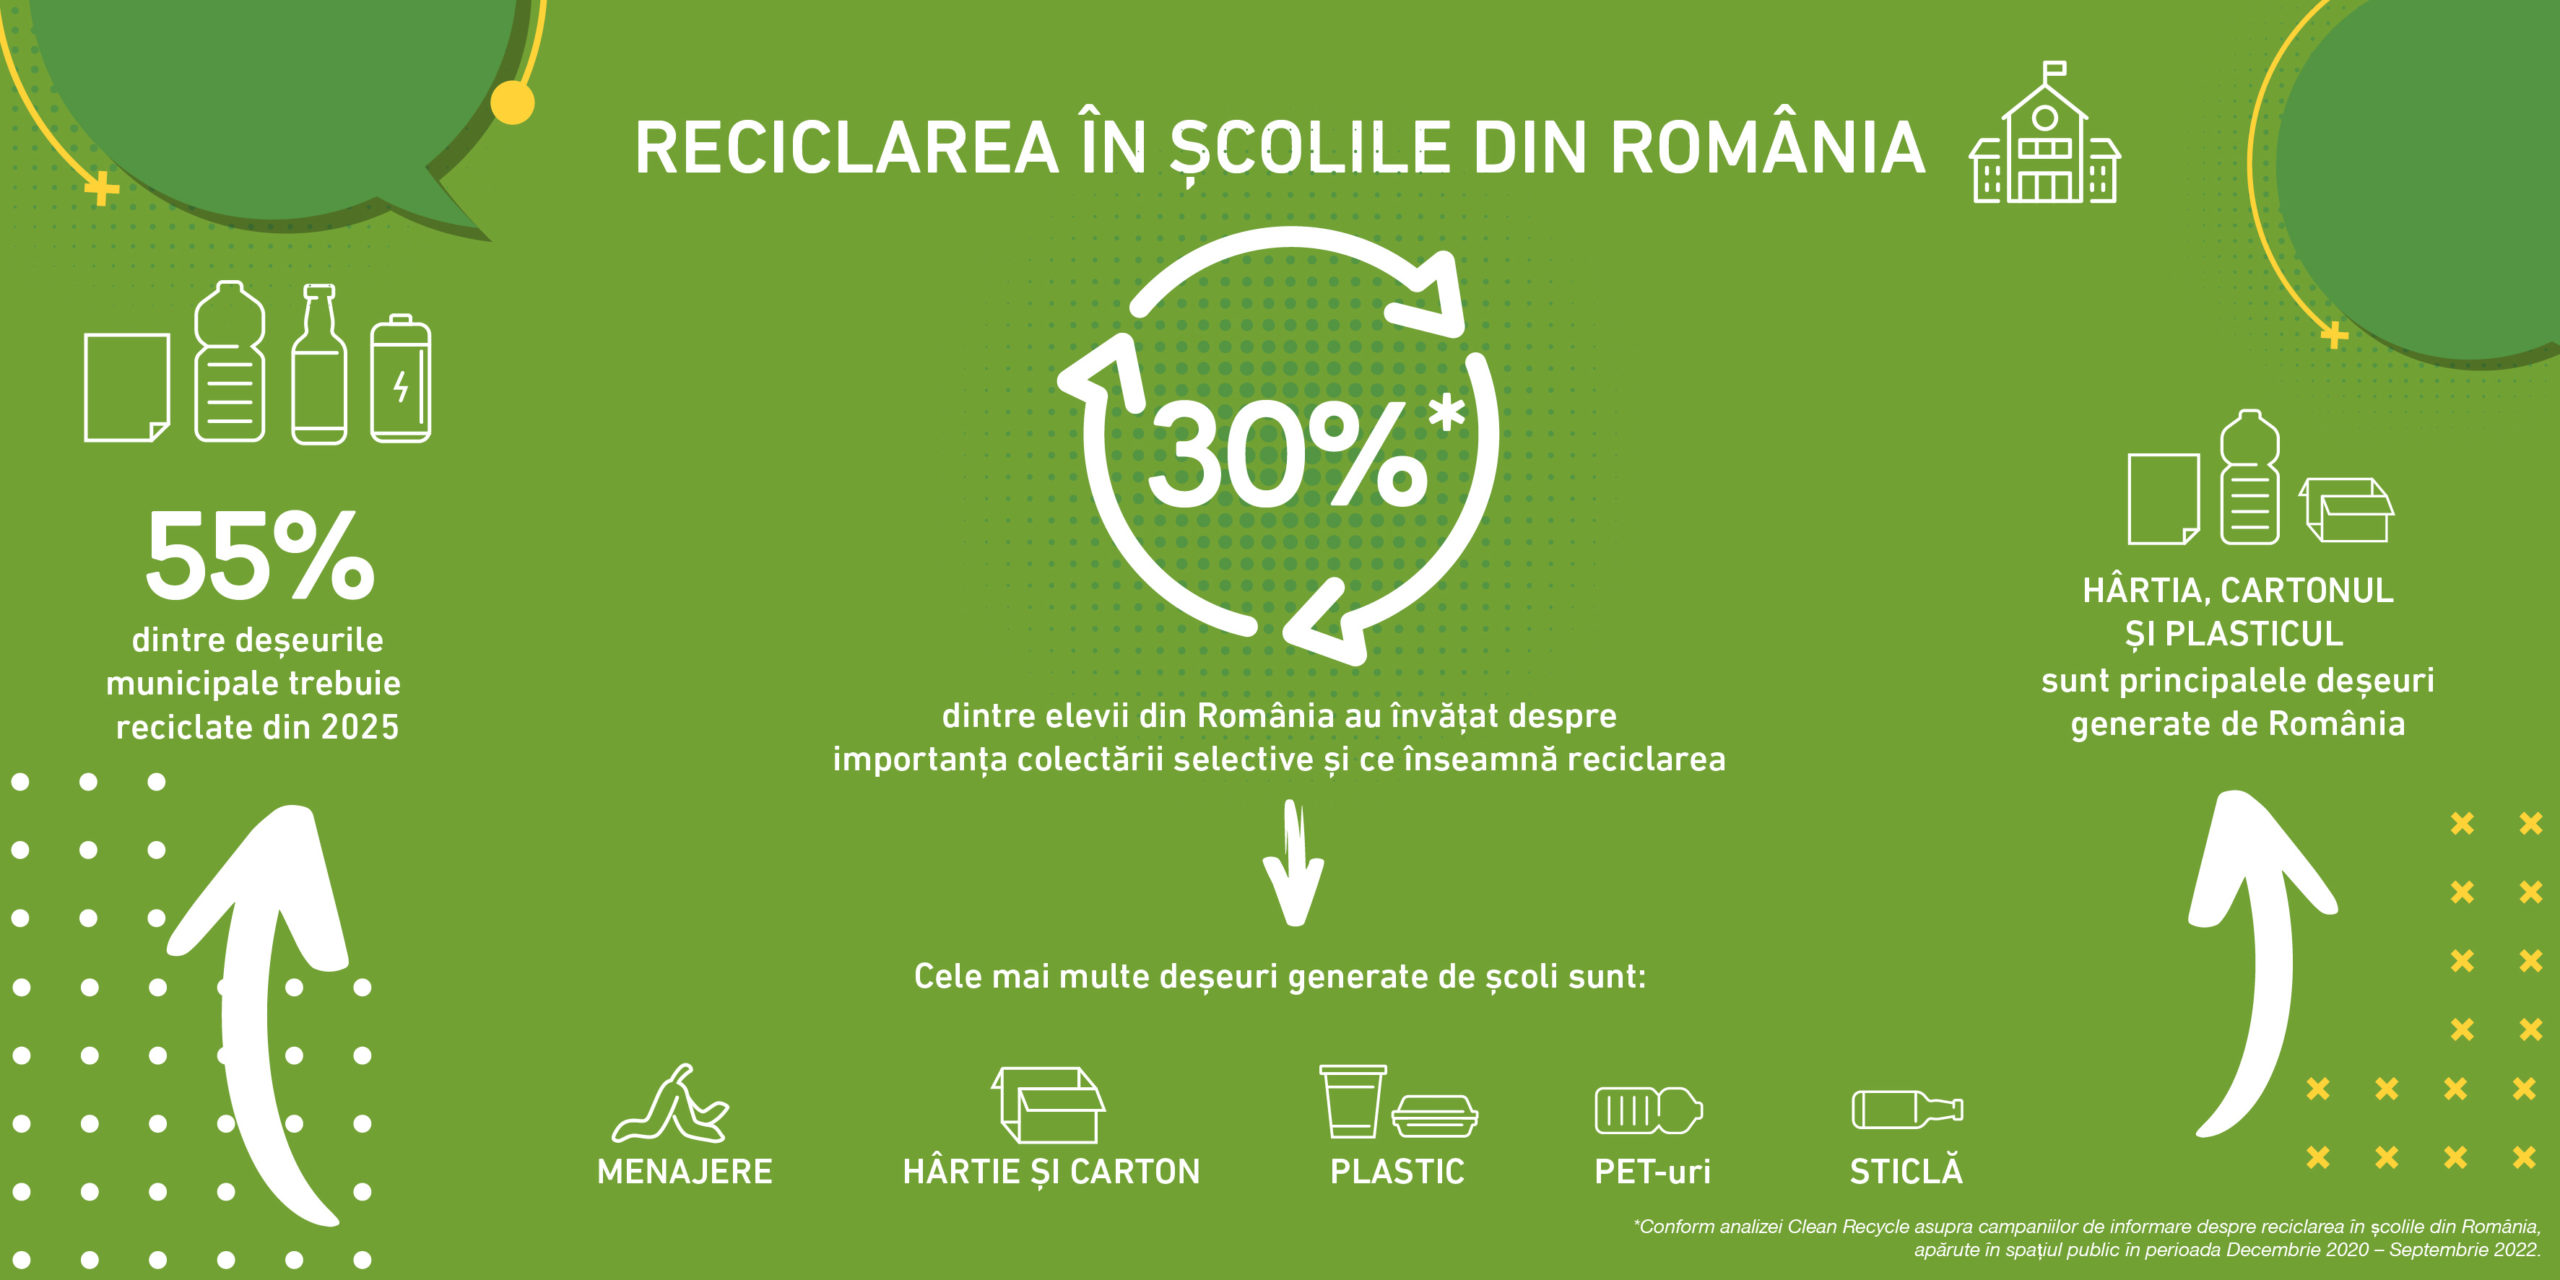 ANALIZĂ: Doar 1 din 3 elevi români ştie ce înseamnă reciclarea deşeurilor. România trebuie să recupereze decalajul educaţional pentru a atinge ţintele de mediu